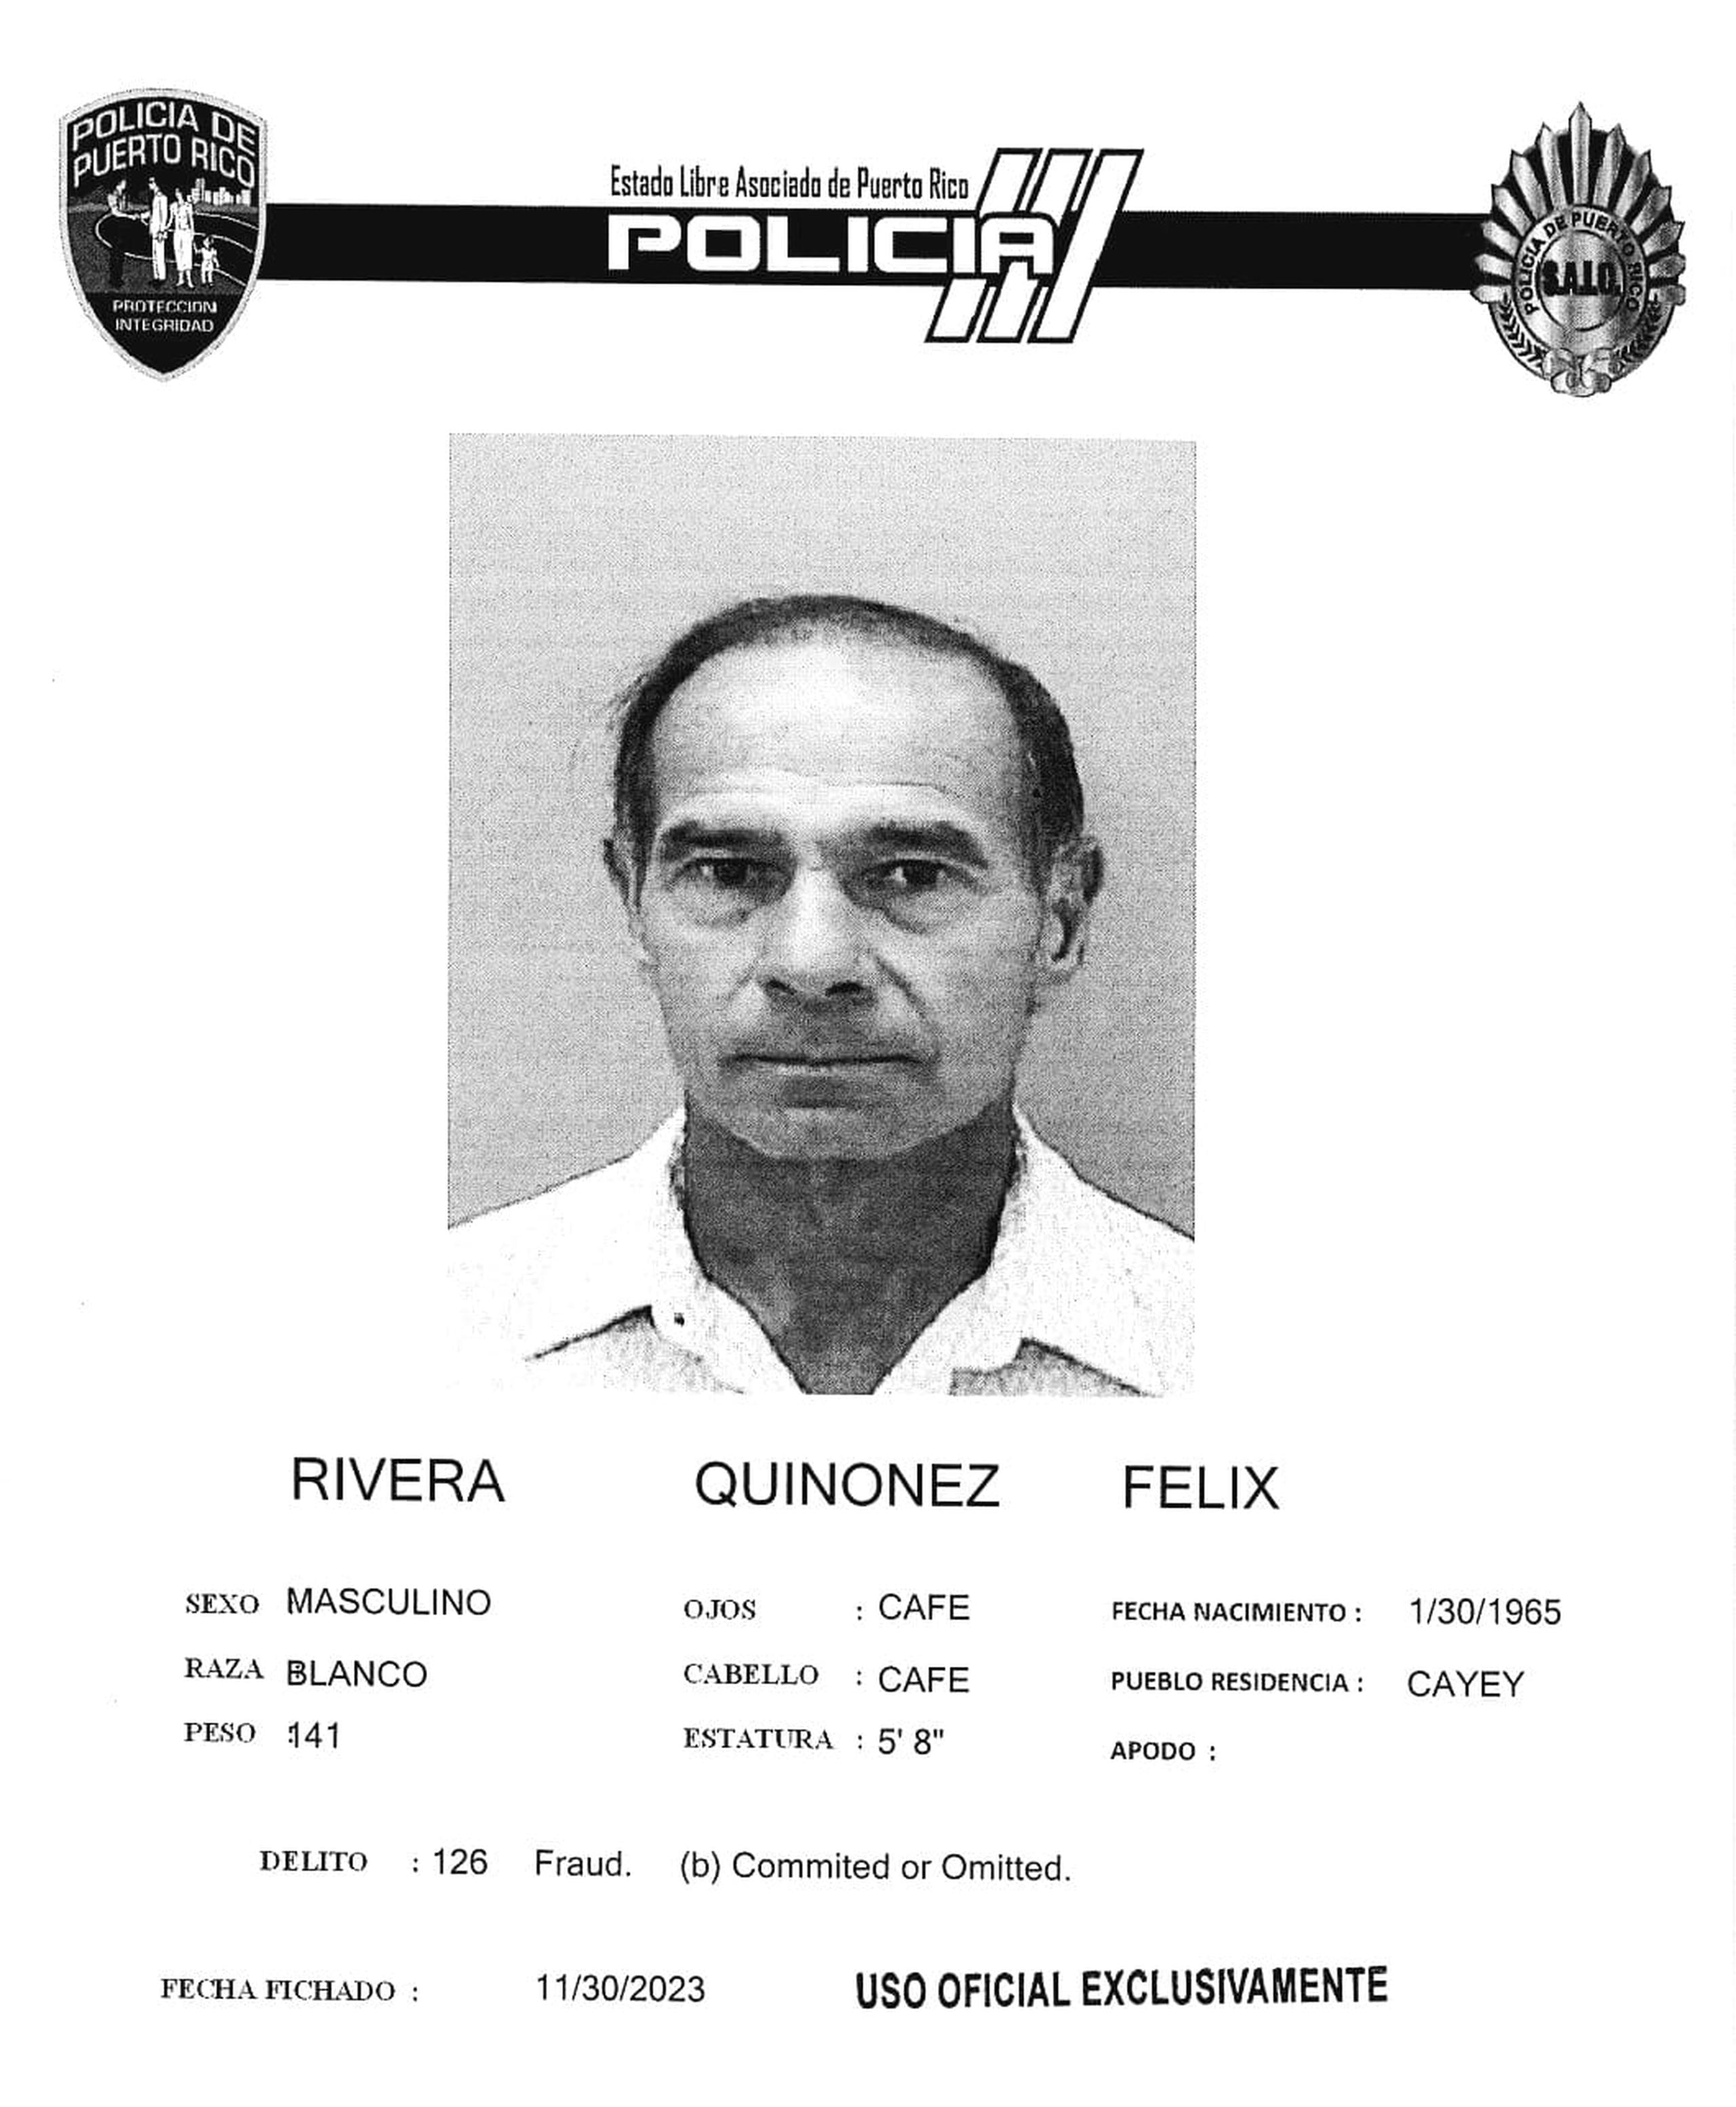 Félix Rivera Quiñones enfrenta cargos por fraude, apropiación ilegal agravada, y uso, posesión o traspaso fraudulento de tarjetas con bandas electrónicas.